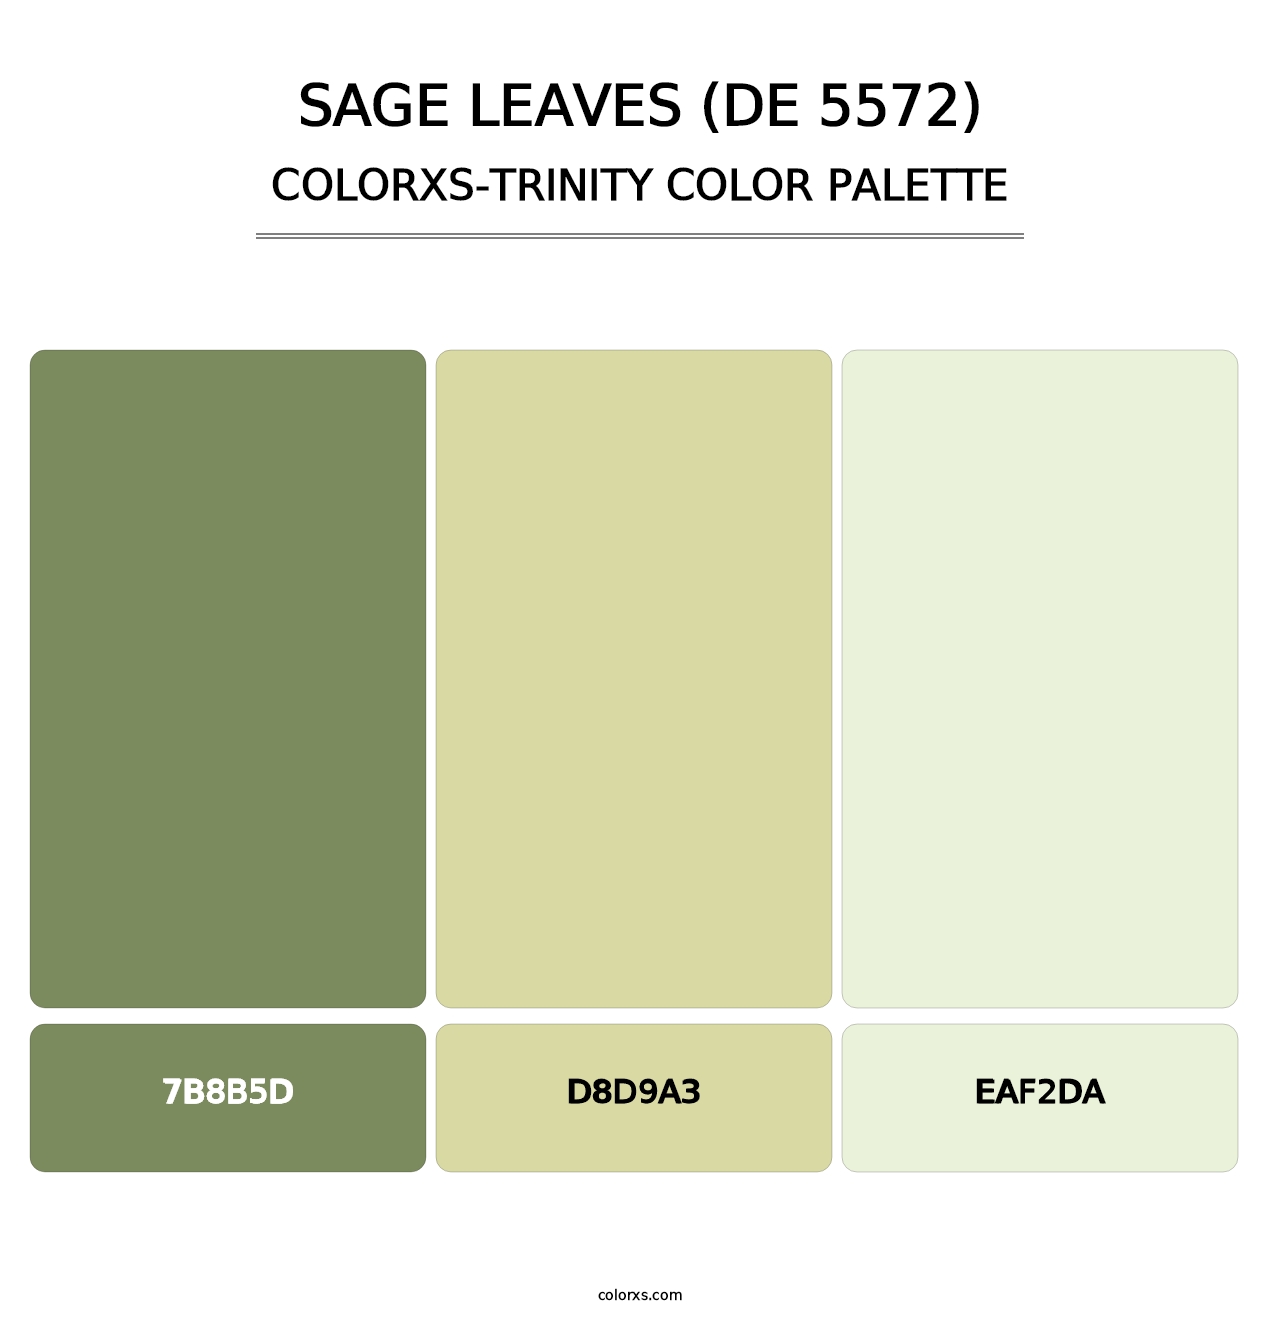 Sage Leaves (DE 5572) - Colorxs Trinity Palette